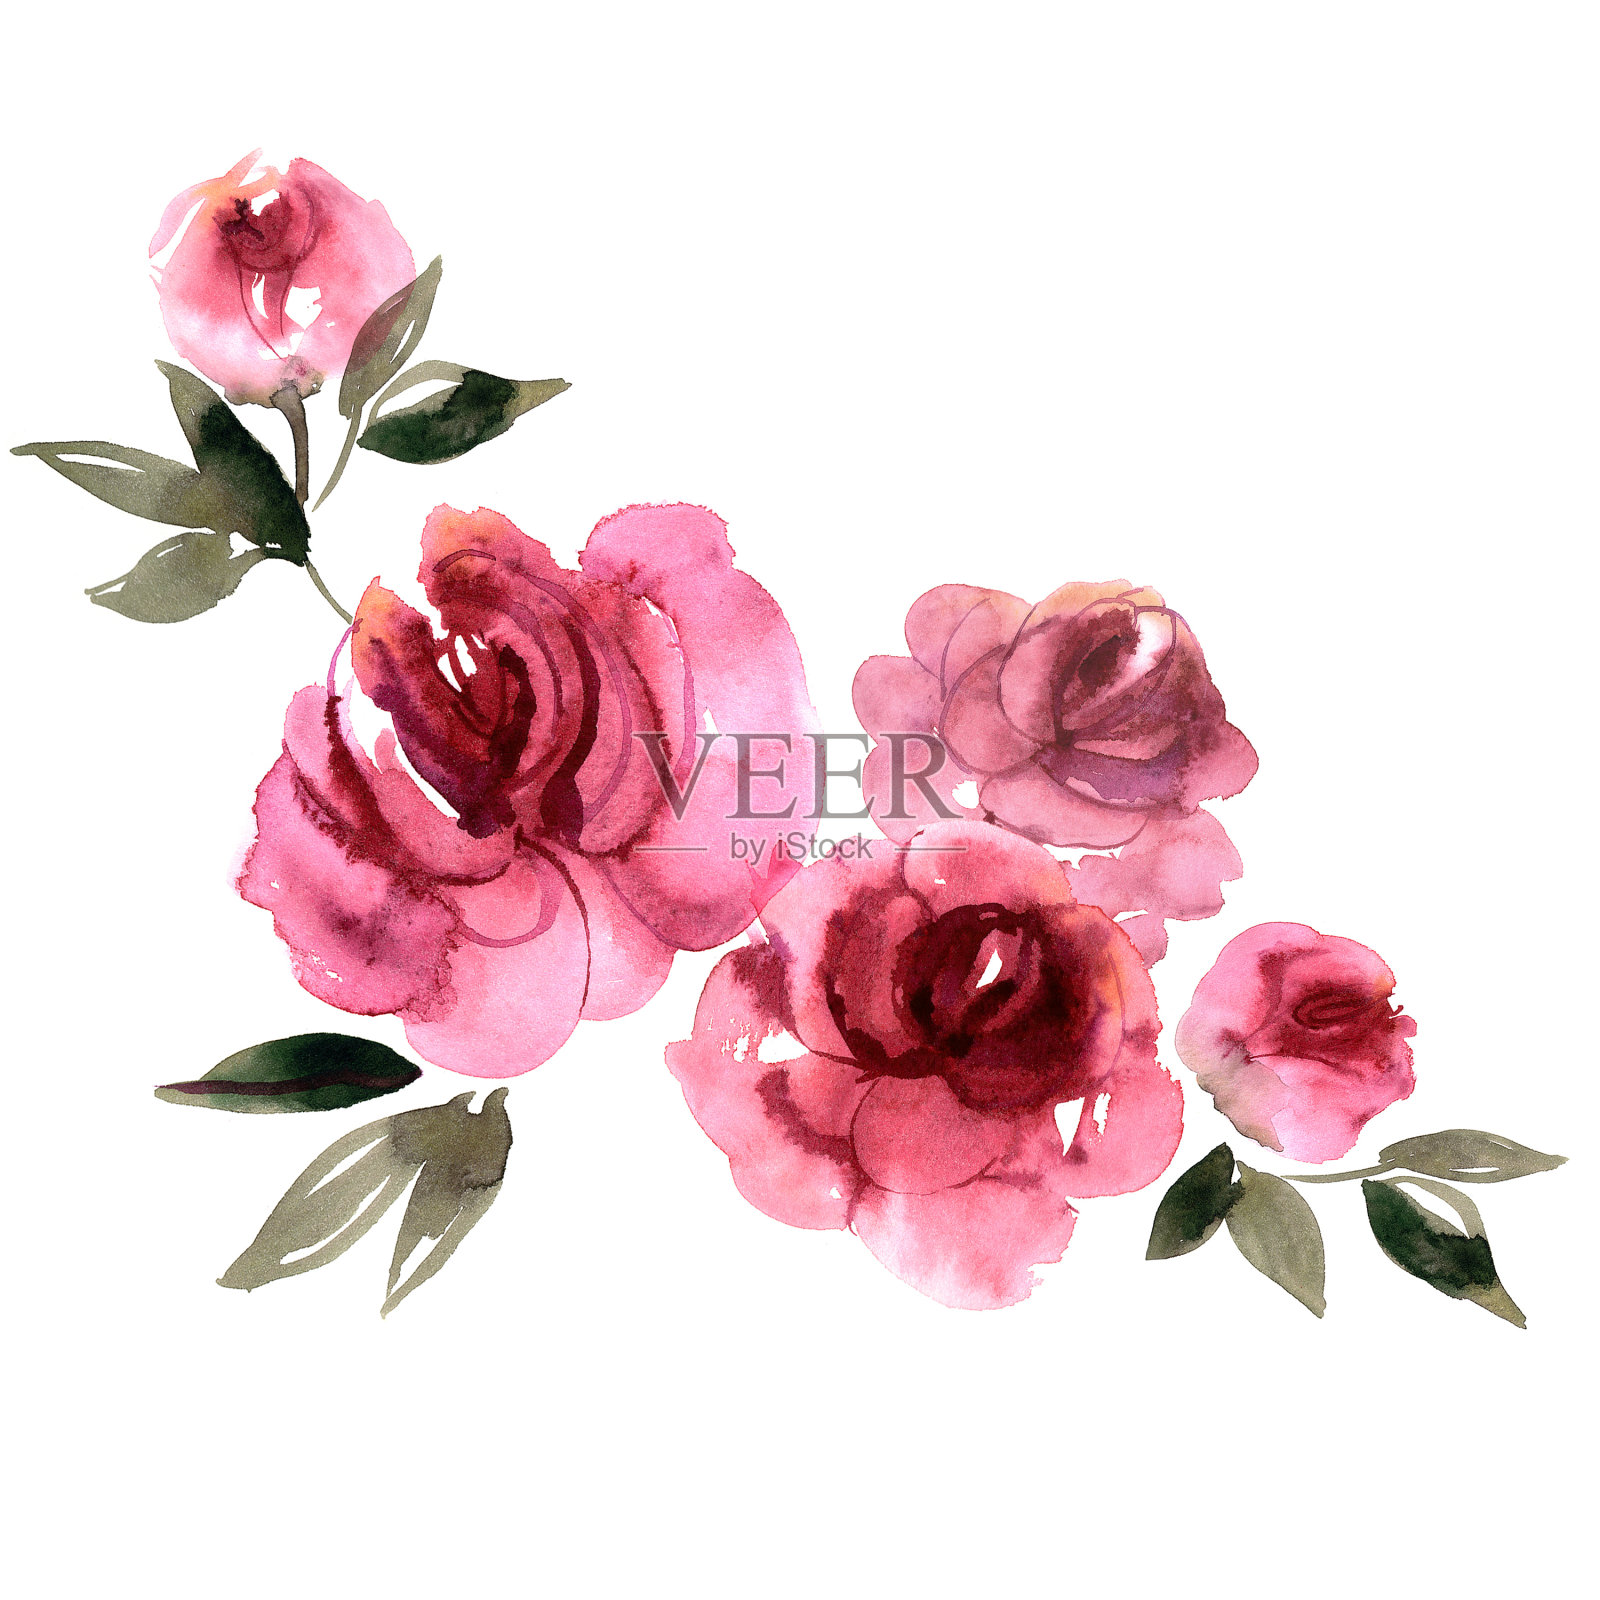 可爱的水彩手绘粉红牡丹插画图片素材